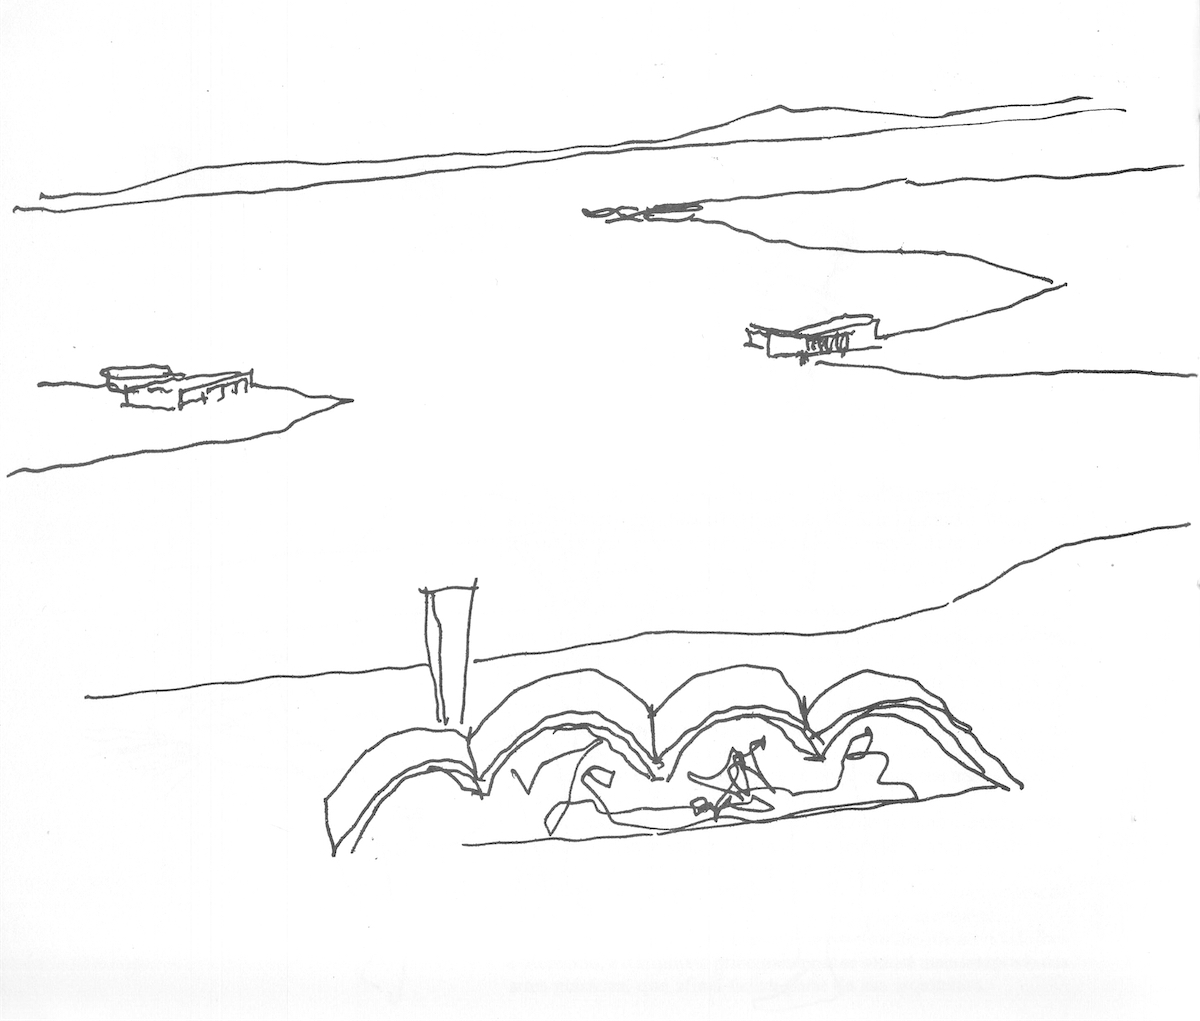 Oscar Niemeyer: sketch of Pampulha